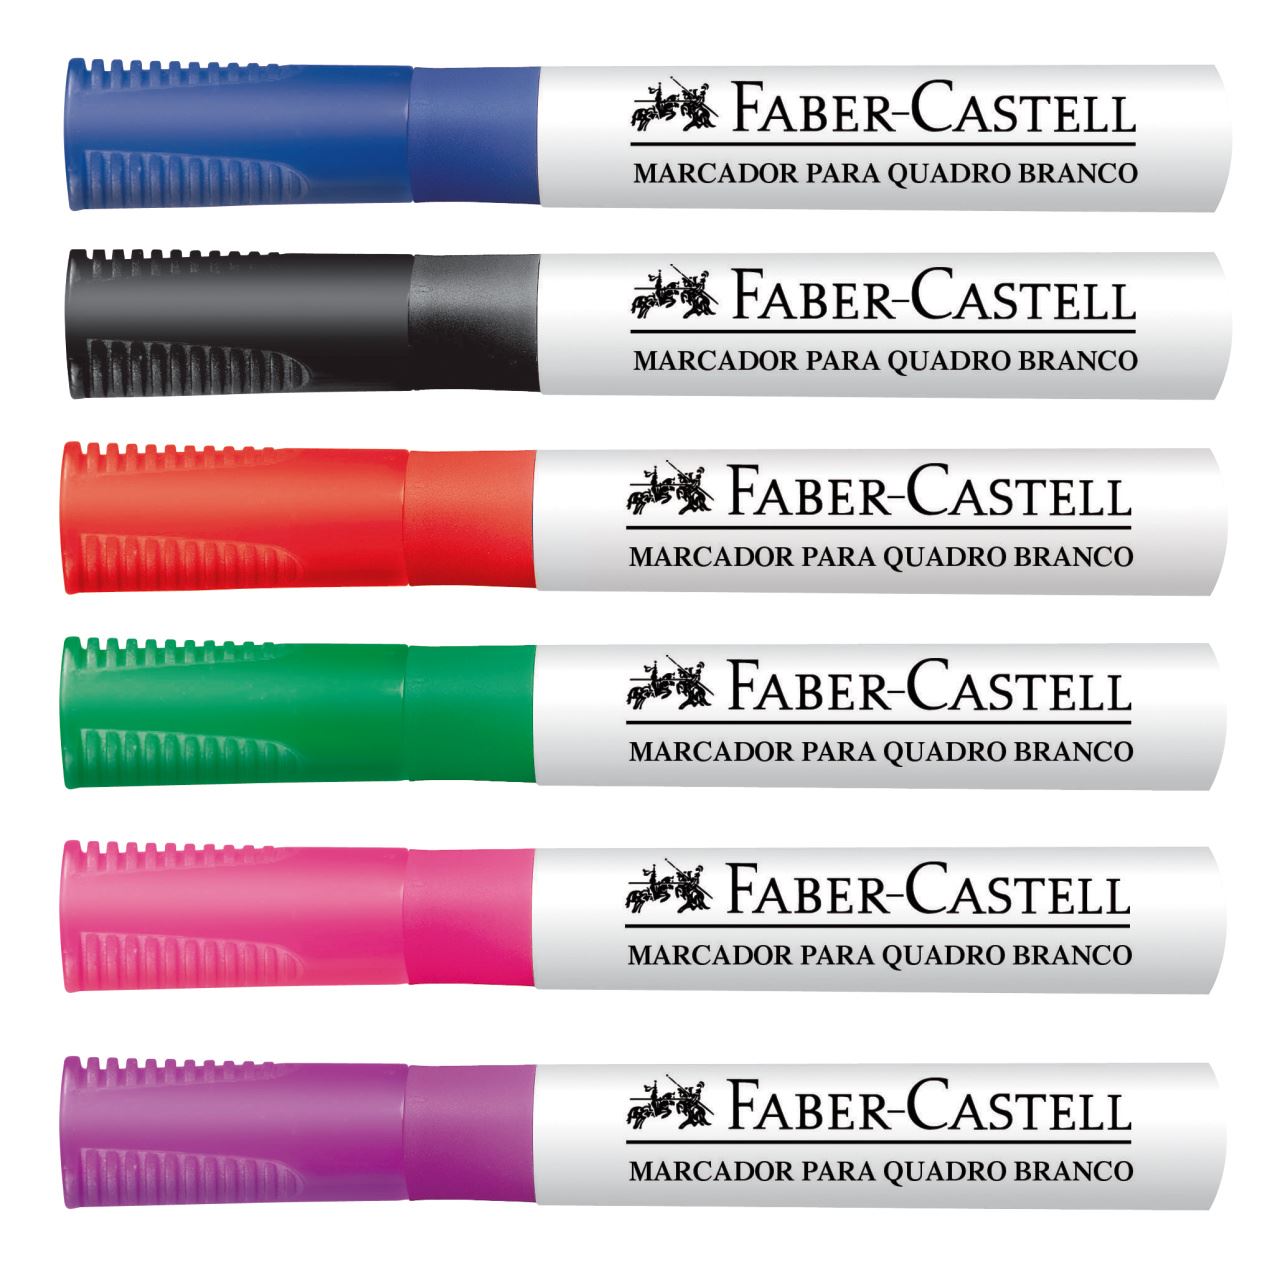 Faber-Castell - Marcador p/ Quadro Branco 